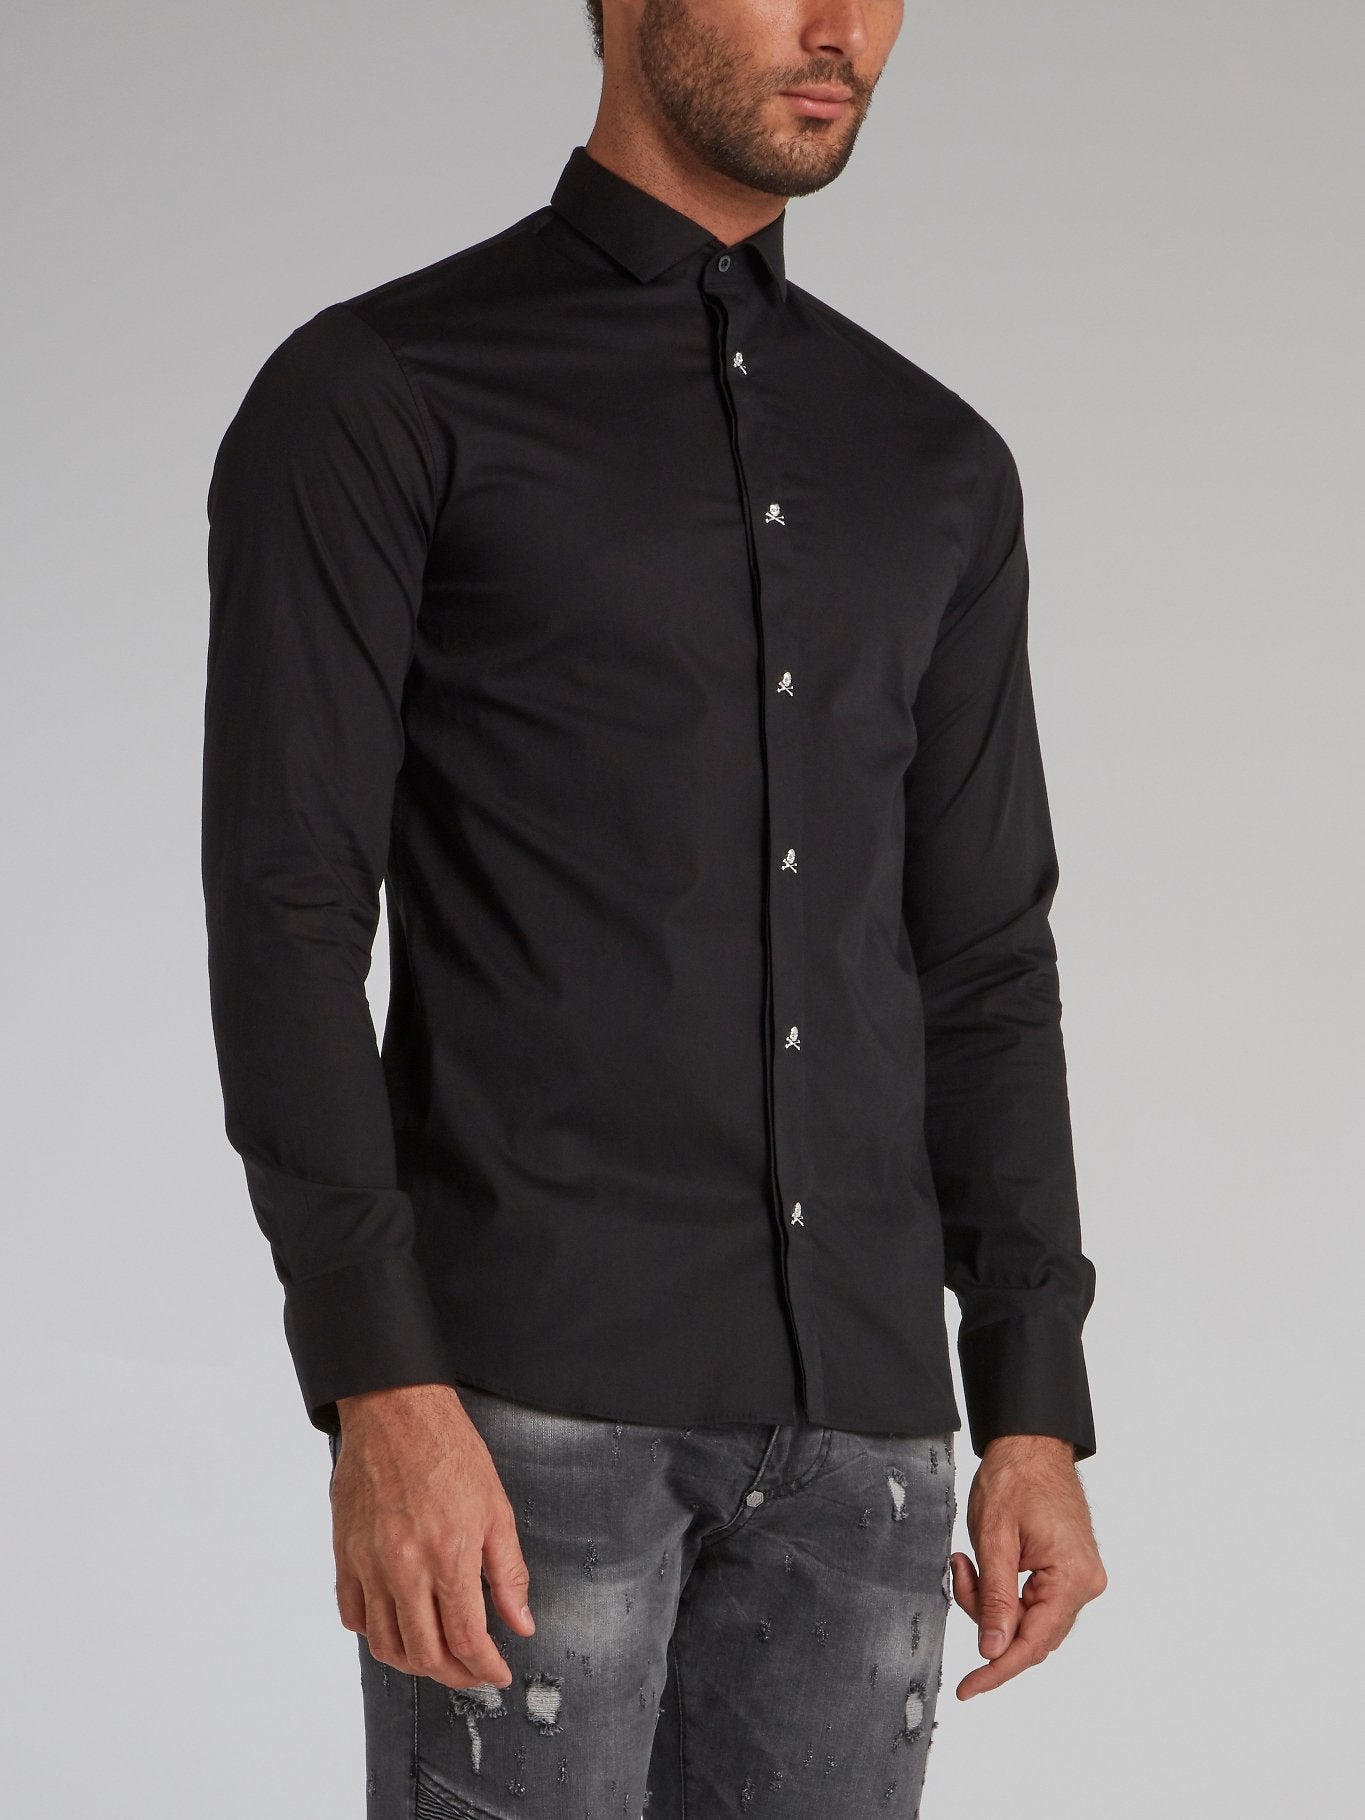 Black Skull Embellished Button Up Shirt